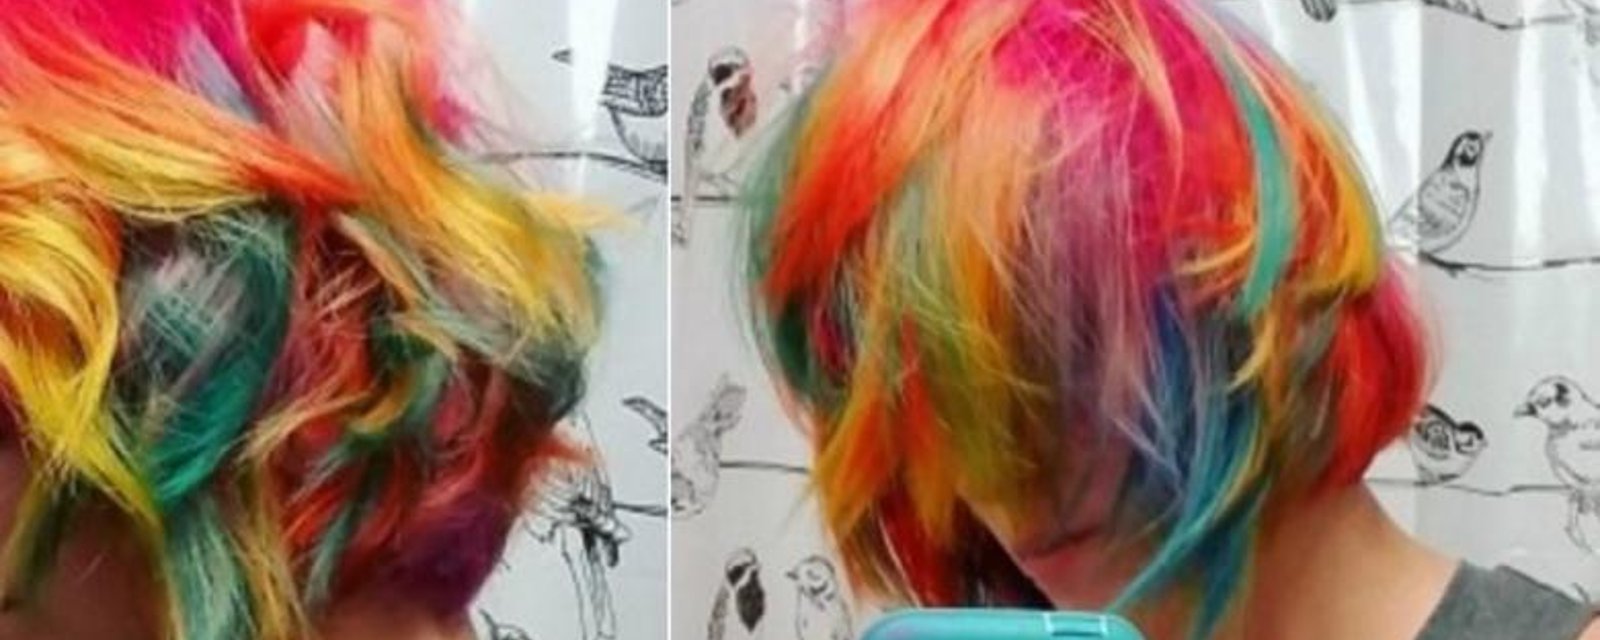 Une chanteuse québécoise se fait teindre les cheveux multicolores! 